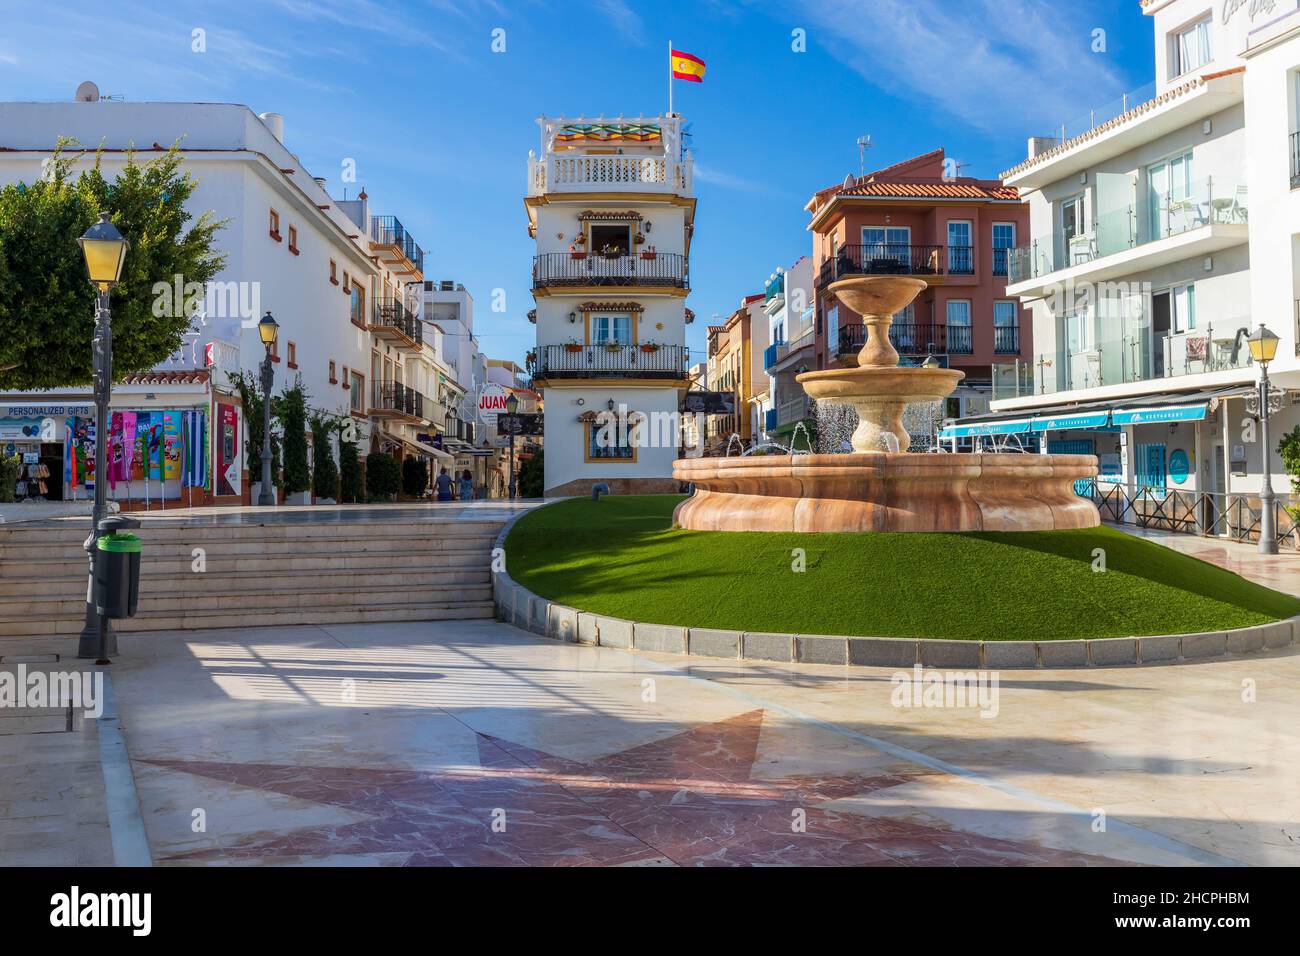 Place de la ville avec fontaine dans le quartier de la carihuela, Torremolinos, Costa del sol, Espagne. Banque D'Images